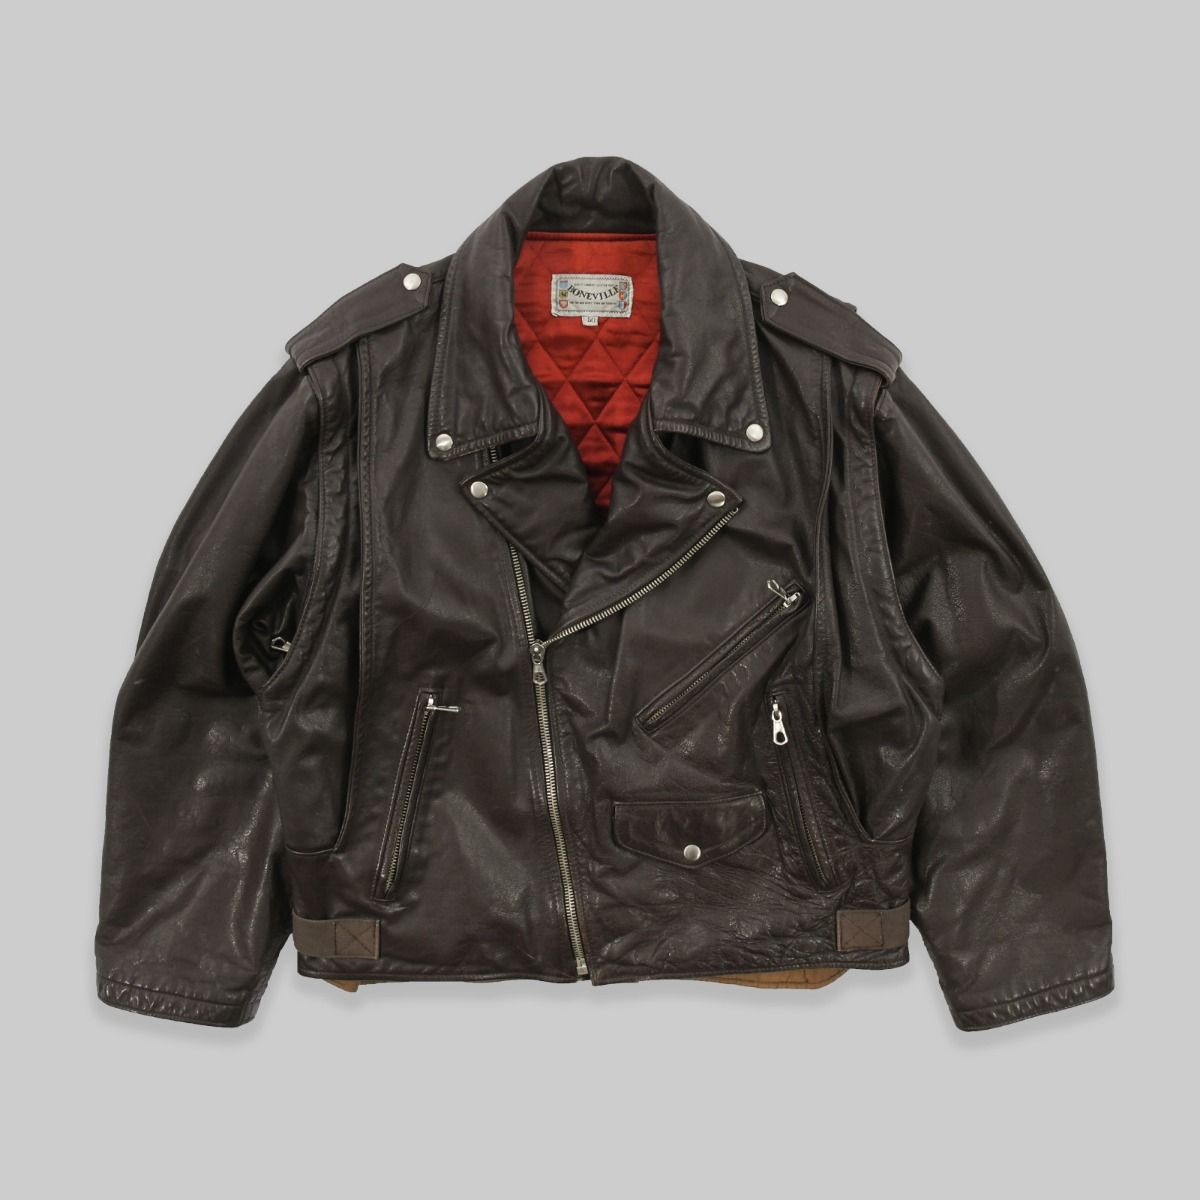 Boneville 1982 Leather Jacket